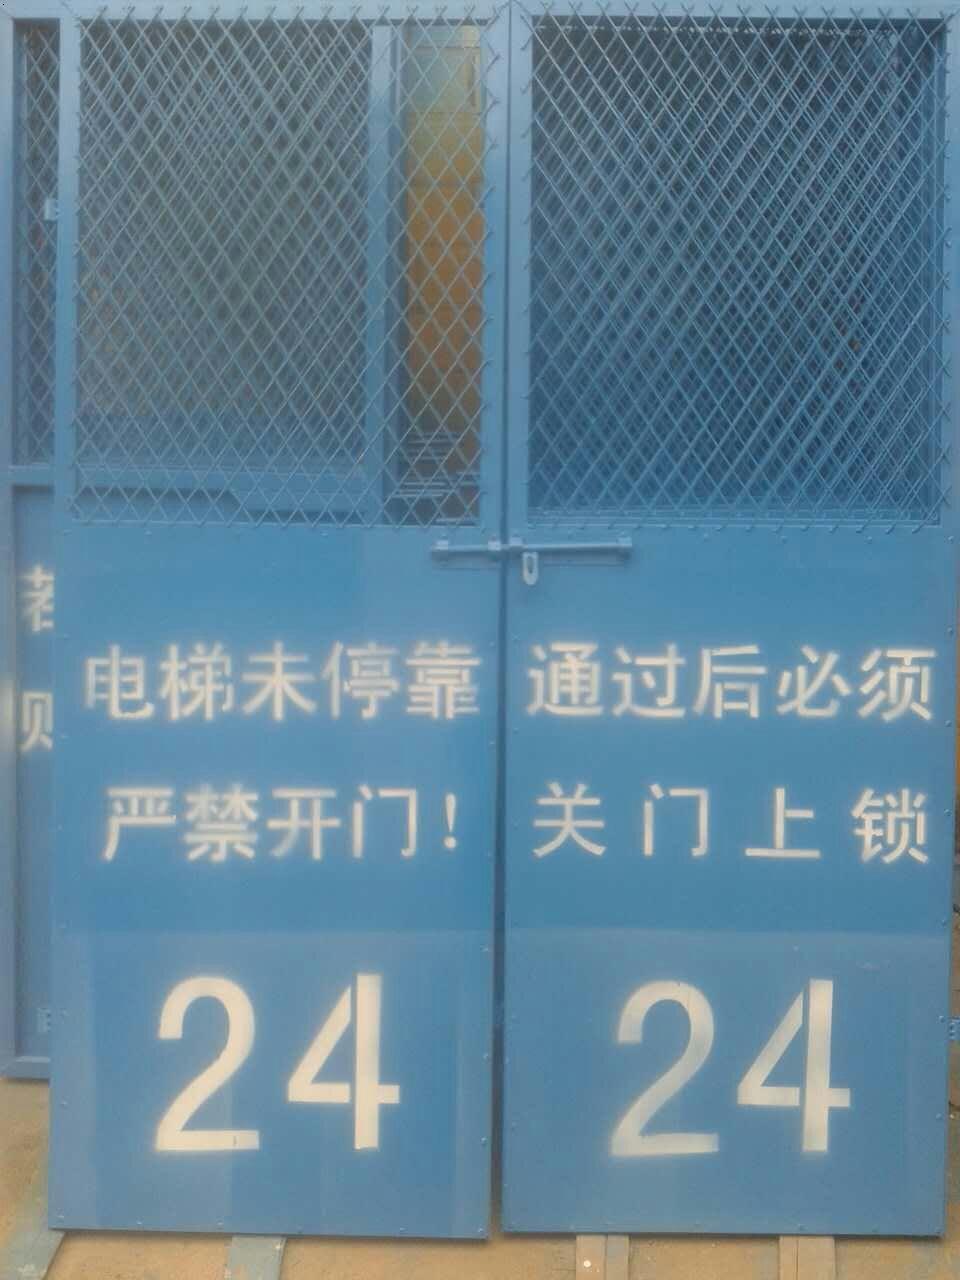 电梯防护门